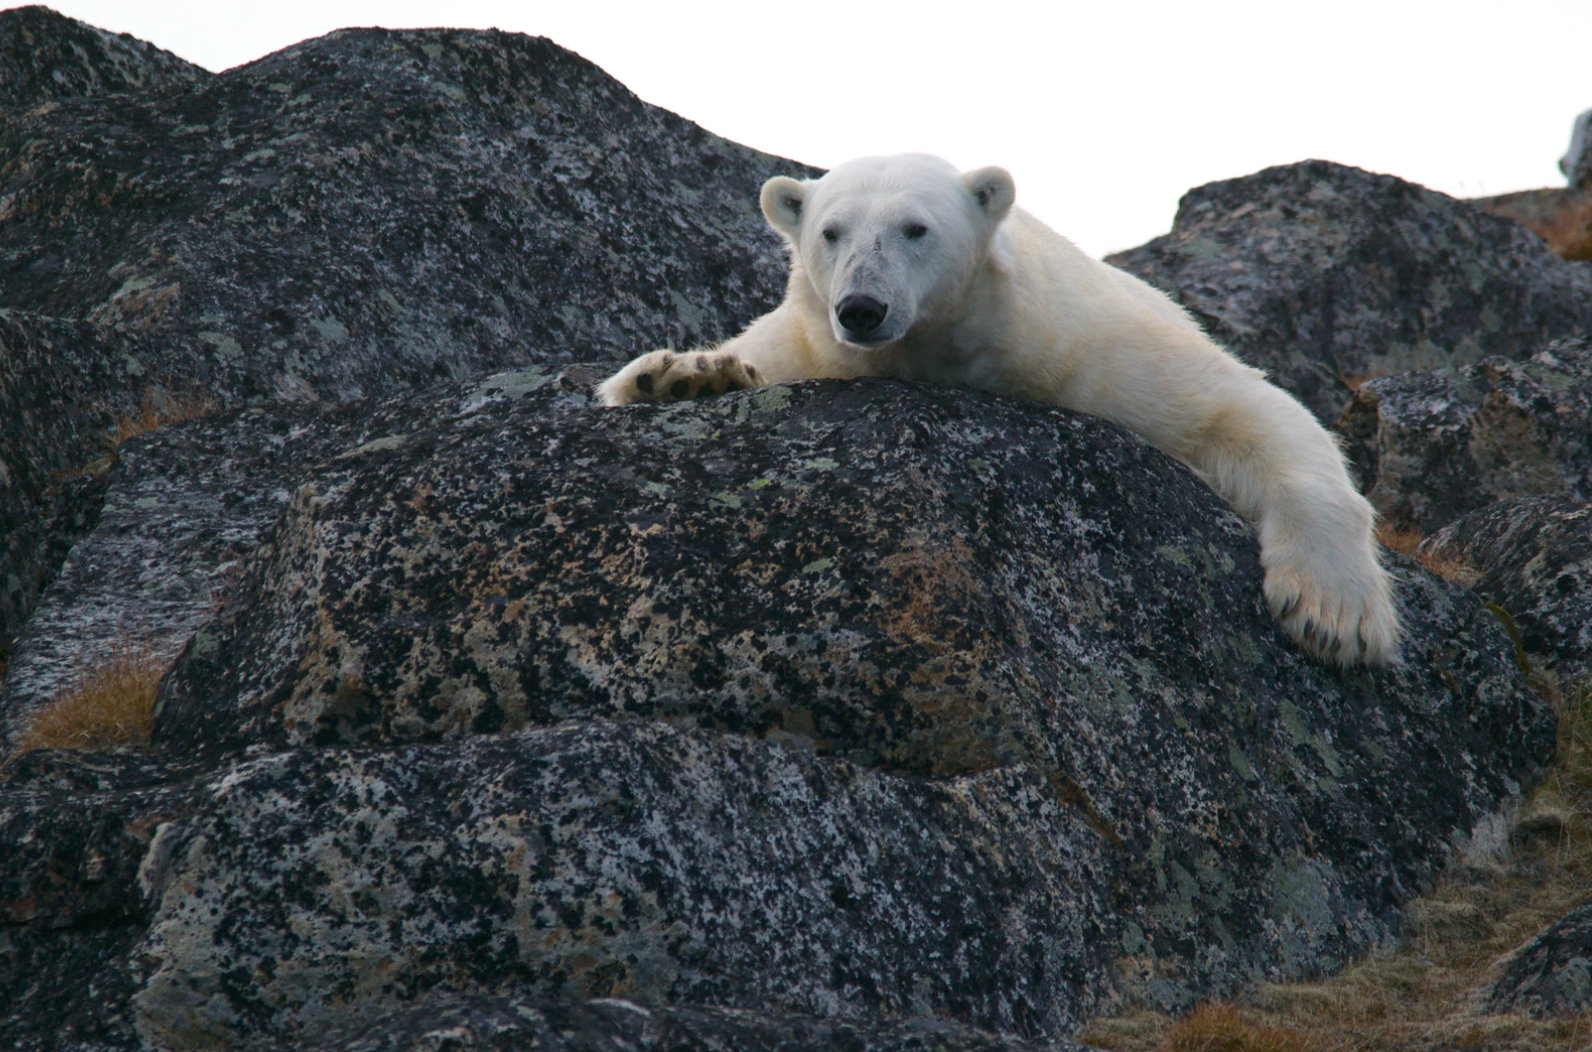 Oväntade gästen: Isbjörn bröt sig in på hotell i Svalbard